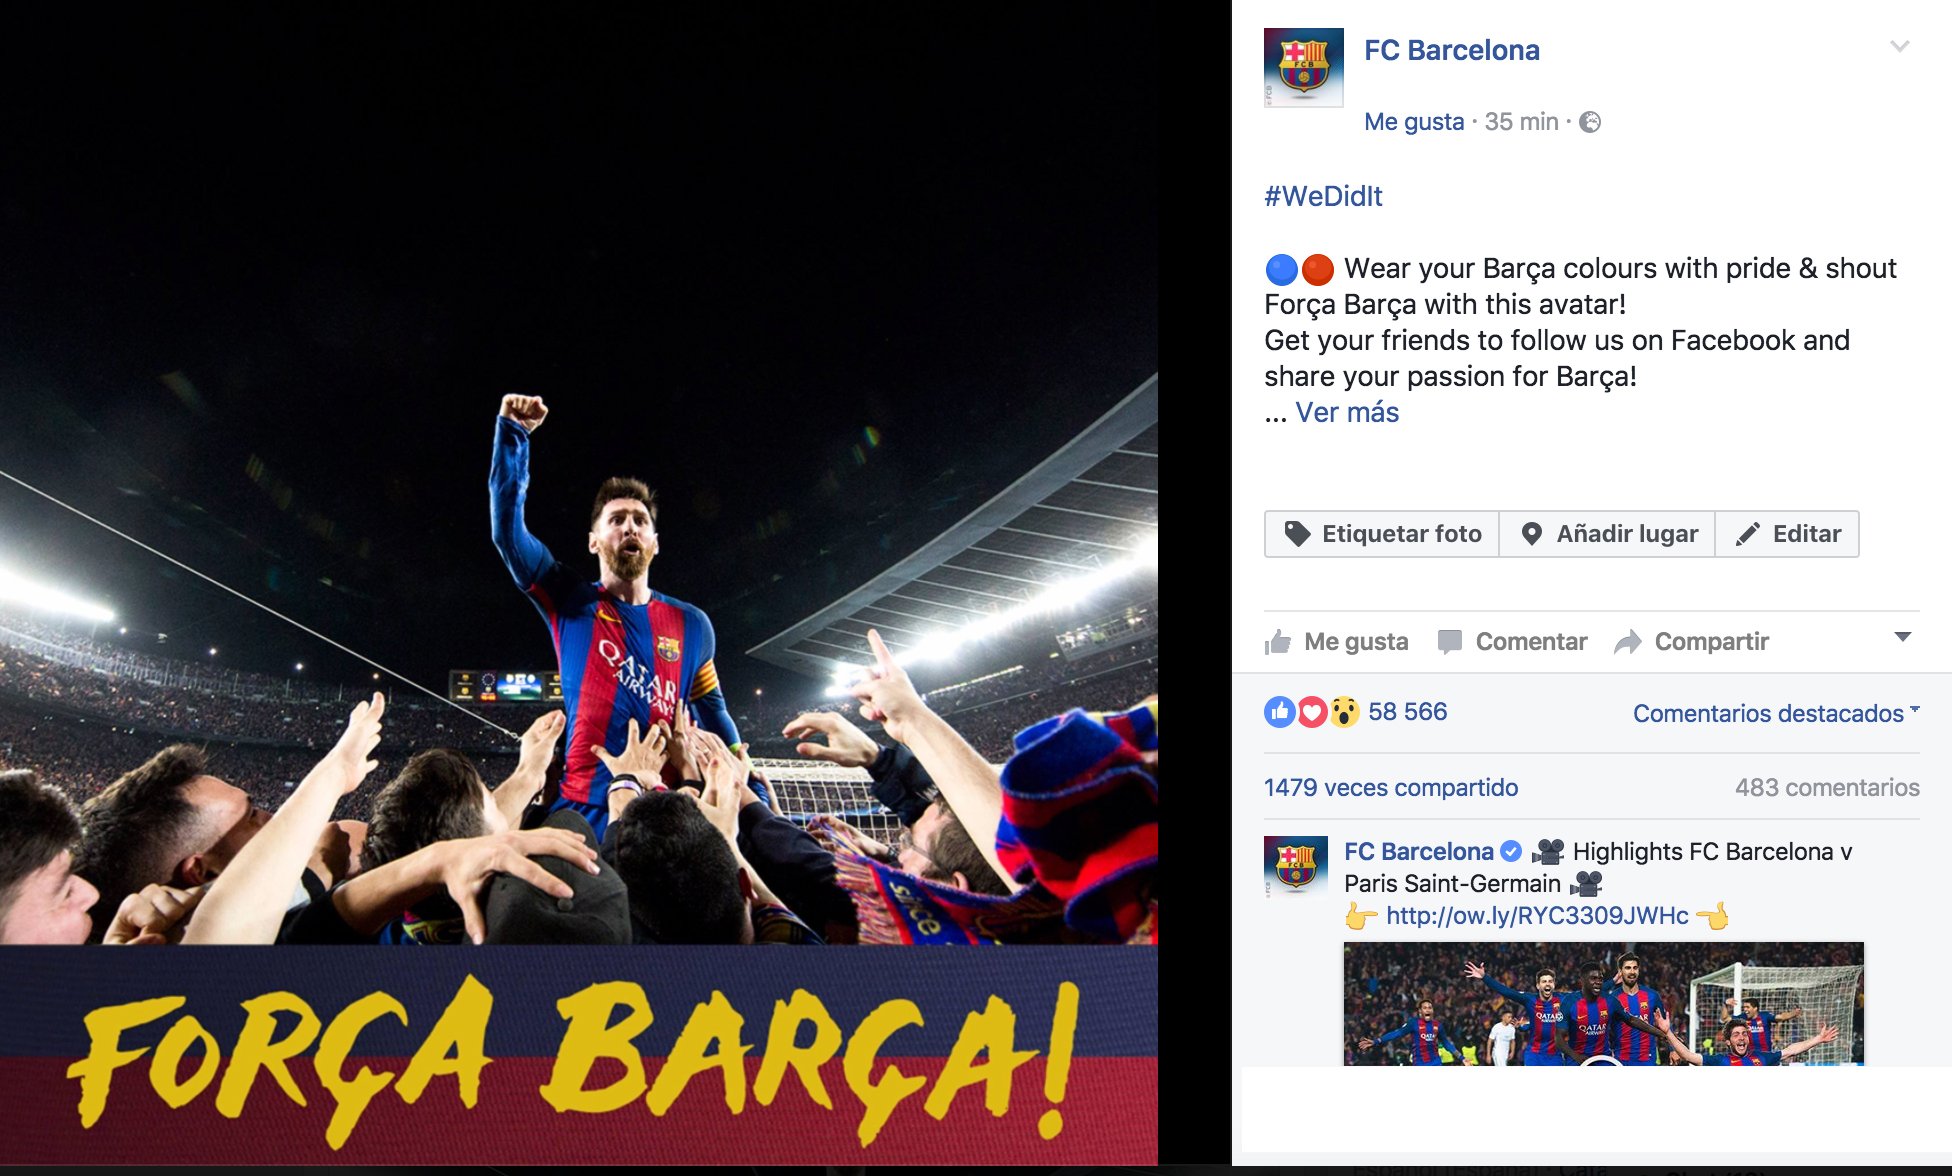 FC Barcelona avatar Facebook: Fan của FC Barcelona, hãy cập nhật hình đại diện của mình với hình ảnh đội bóng nhà ngay bây giờ. Những hình ảnh đầy màu sắc và chất lượng cao sẽ làm cho trang cá nhân của bạn trở nên cuốn hút hơn và thu hút nhiều người hâm mộ cùng chia sẻ cùng nhau niềm đam mê.